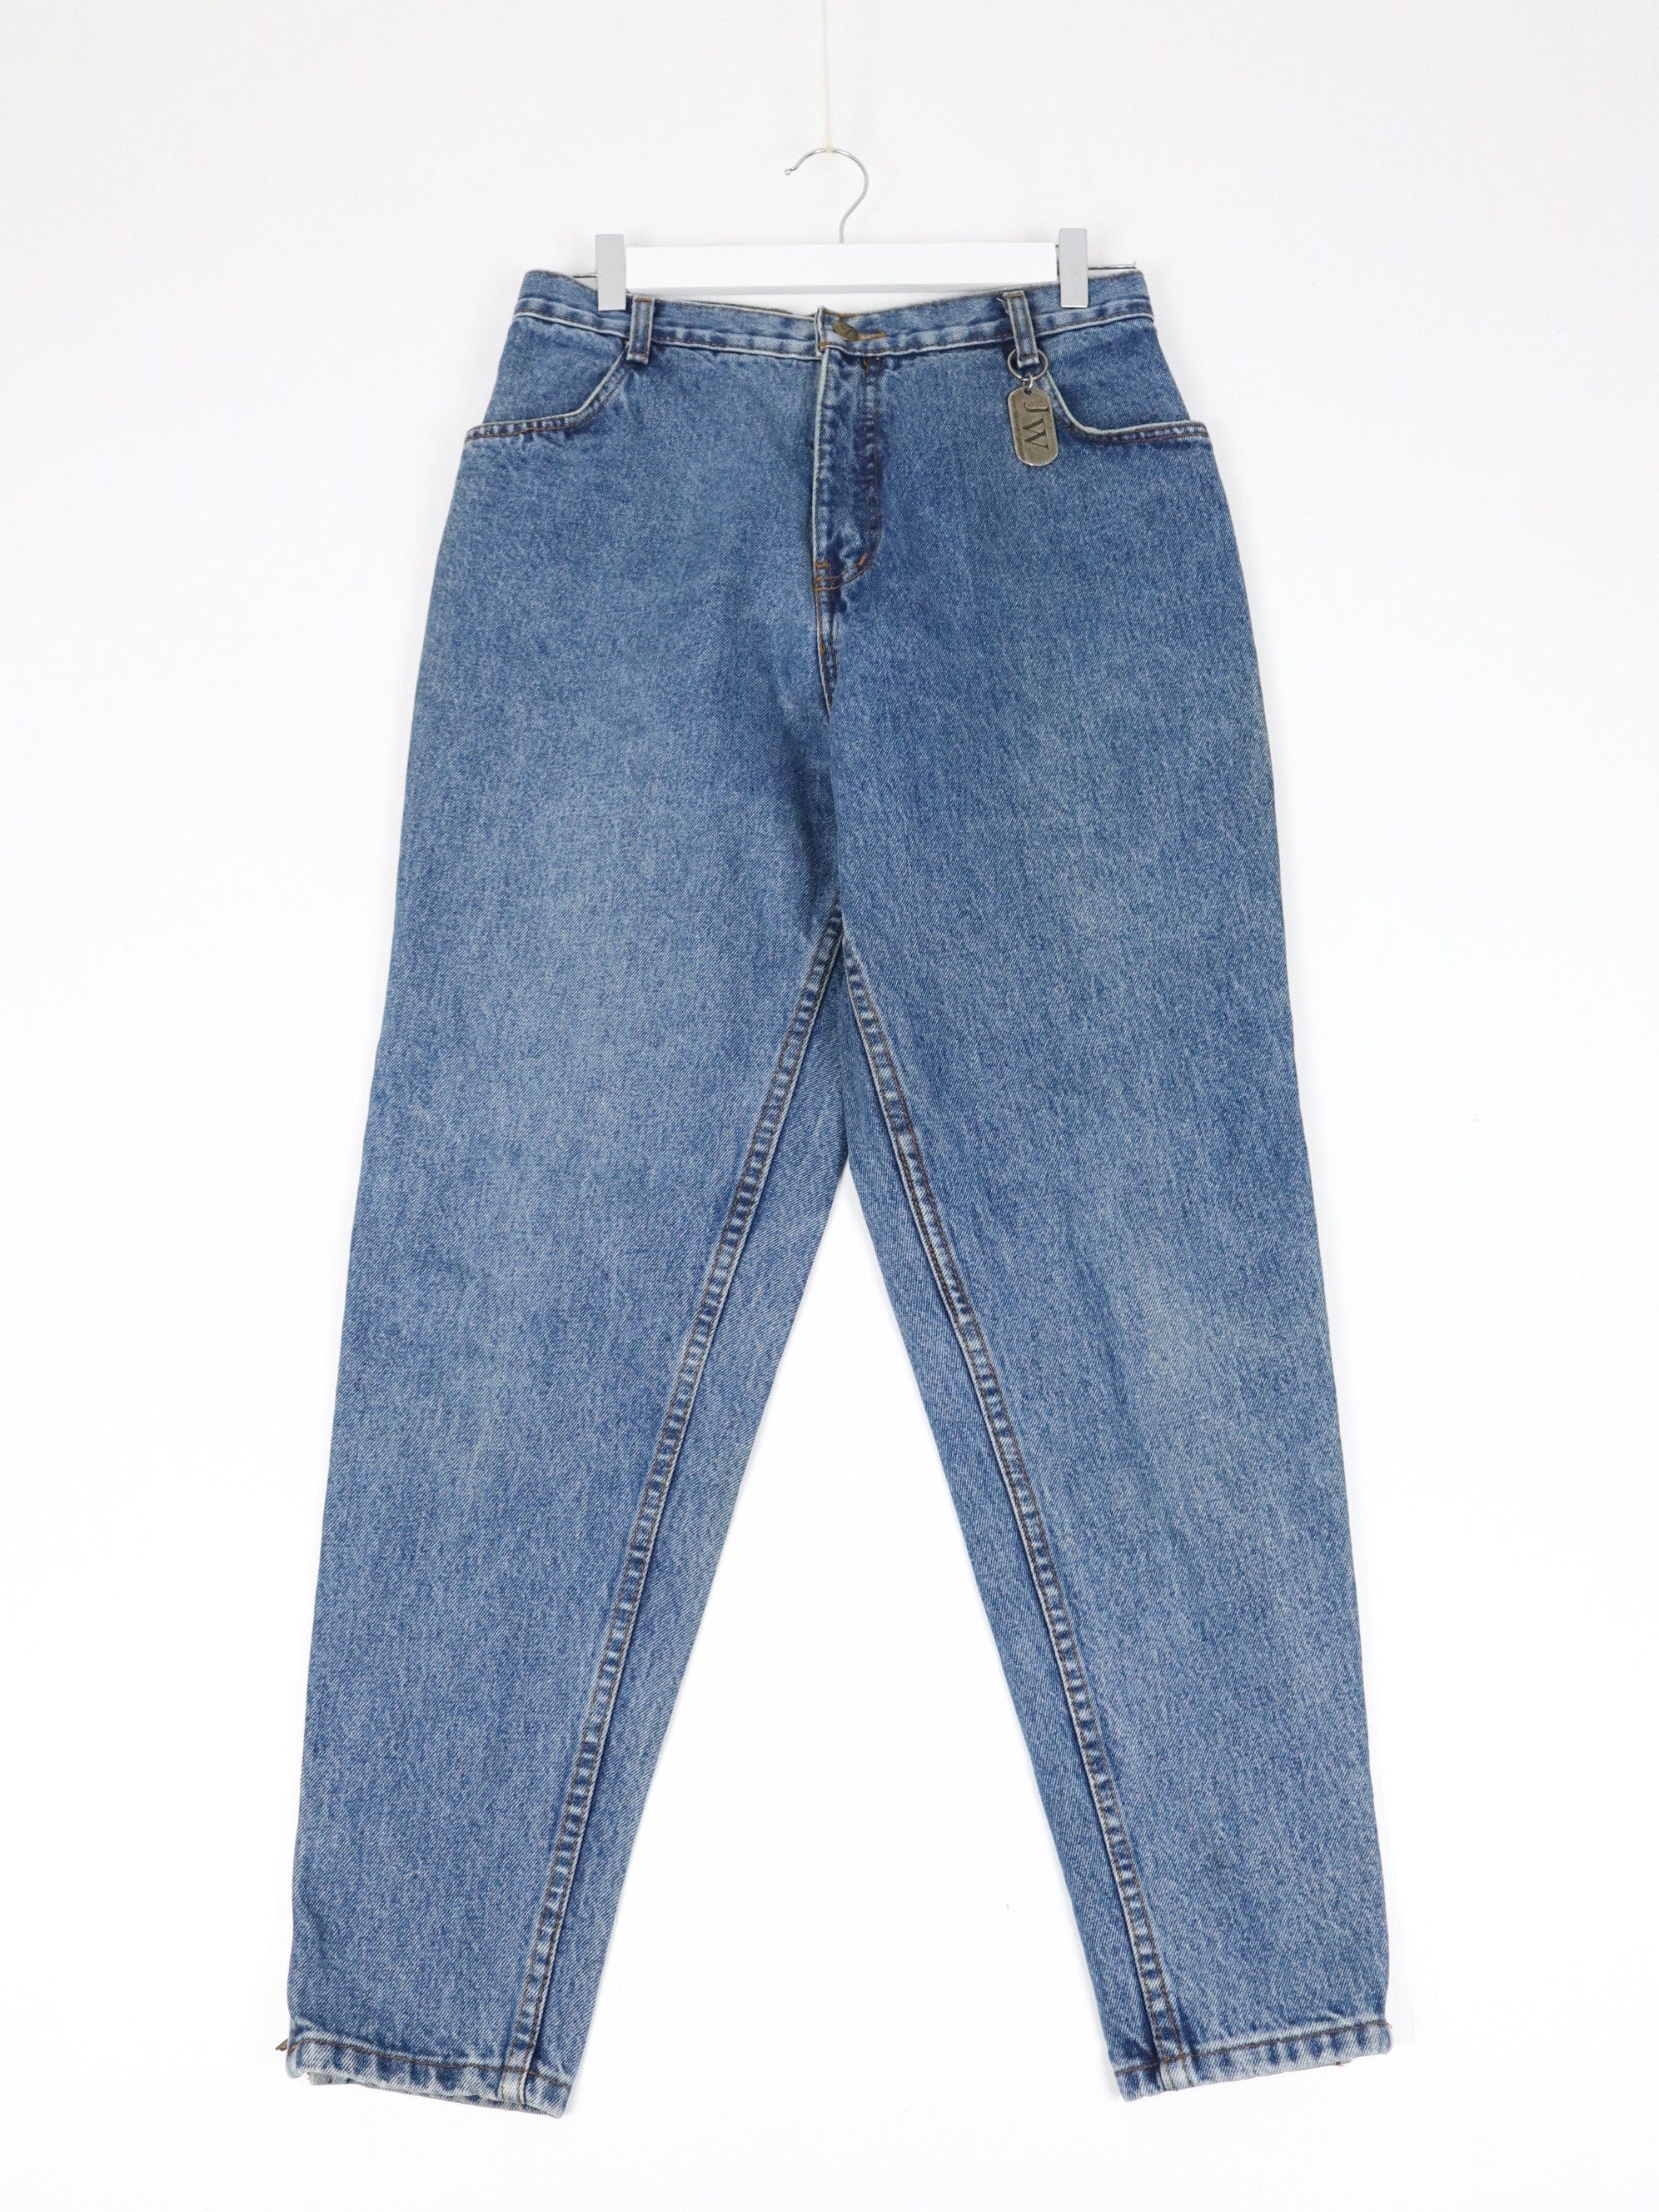 https://propervintagecanada.com/cdn/shop/files/other-jeans-vintage-jean-works-company-pants-womens-30-x-28-blue-denim-jeans-31575447830587.jpg?v=1697410395